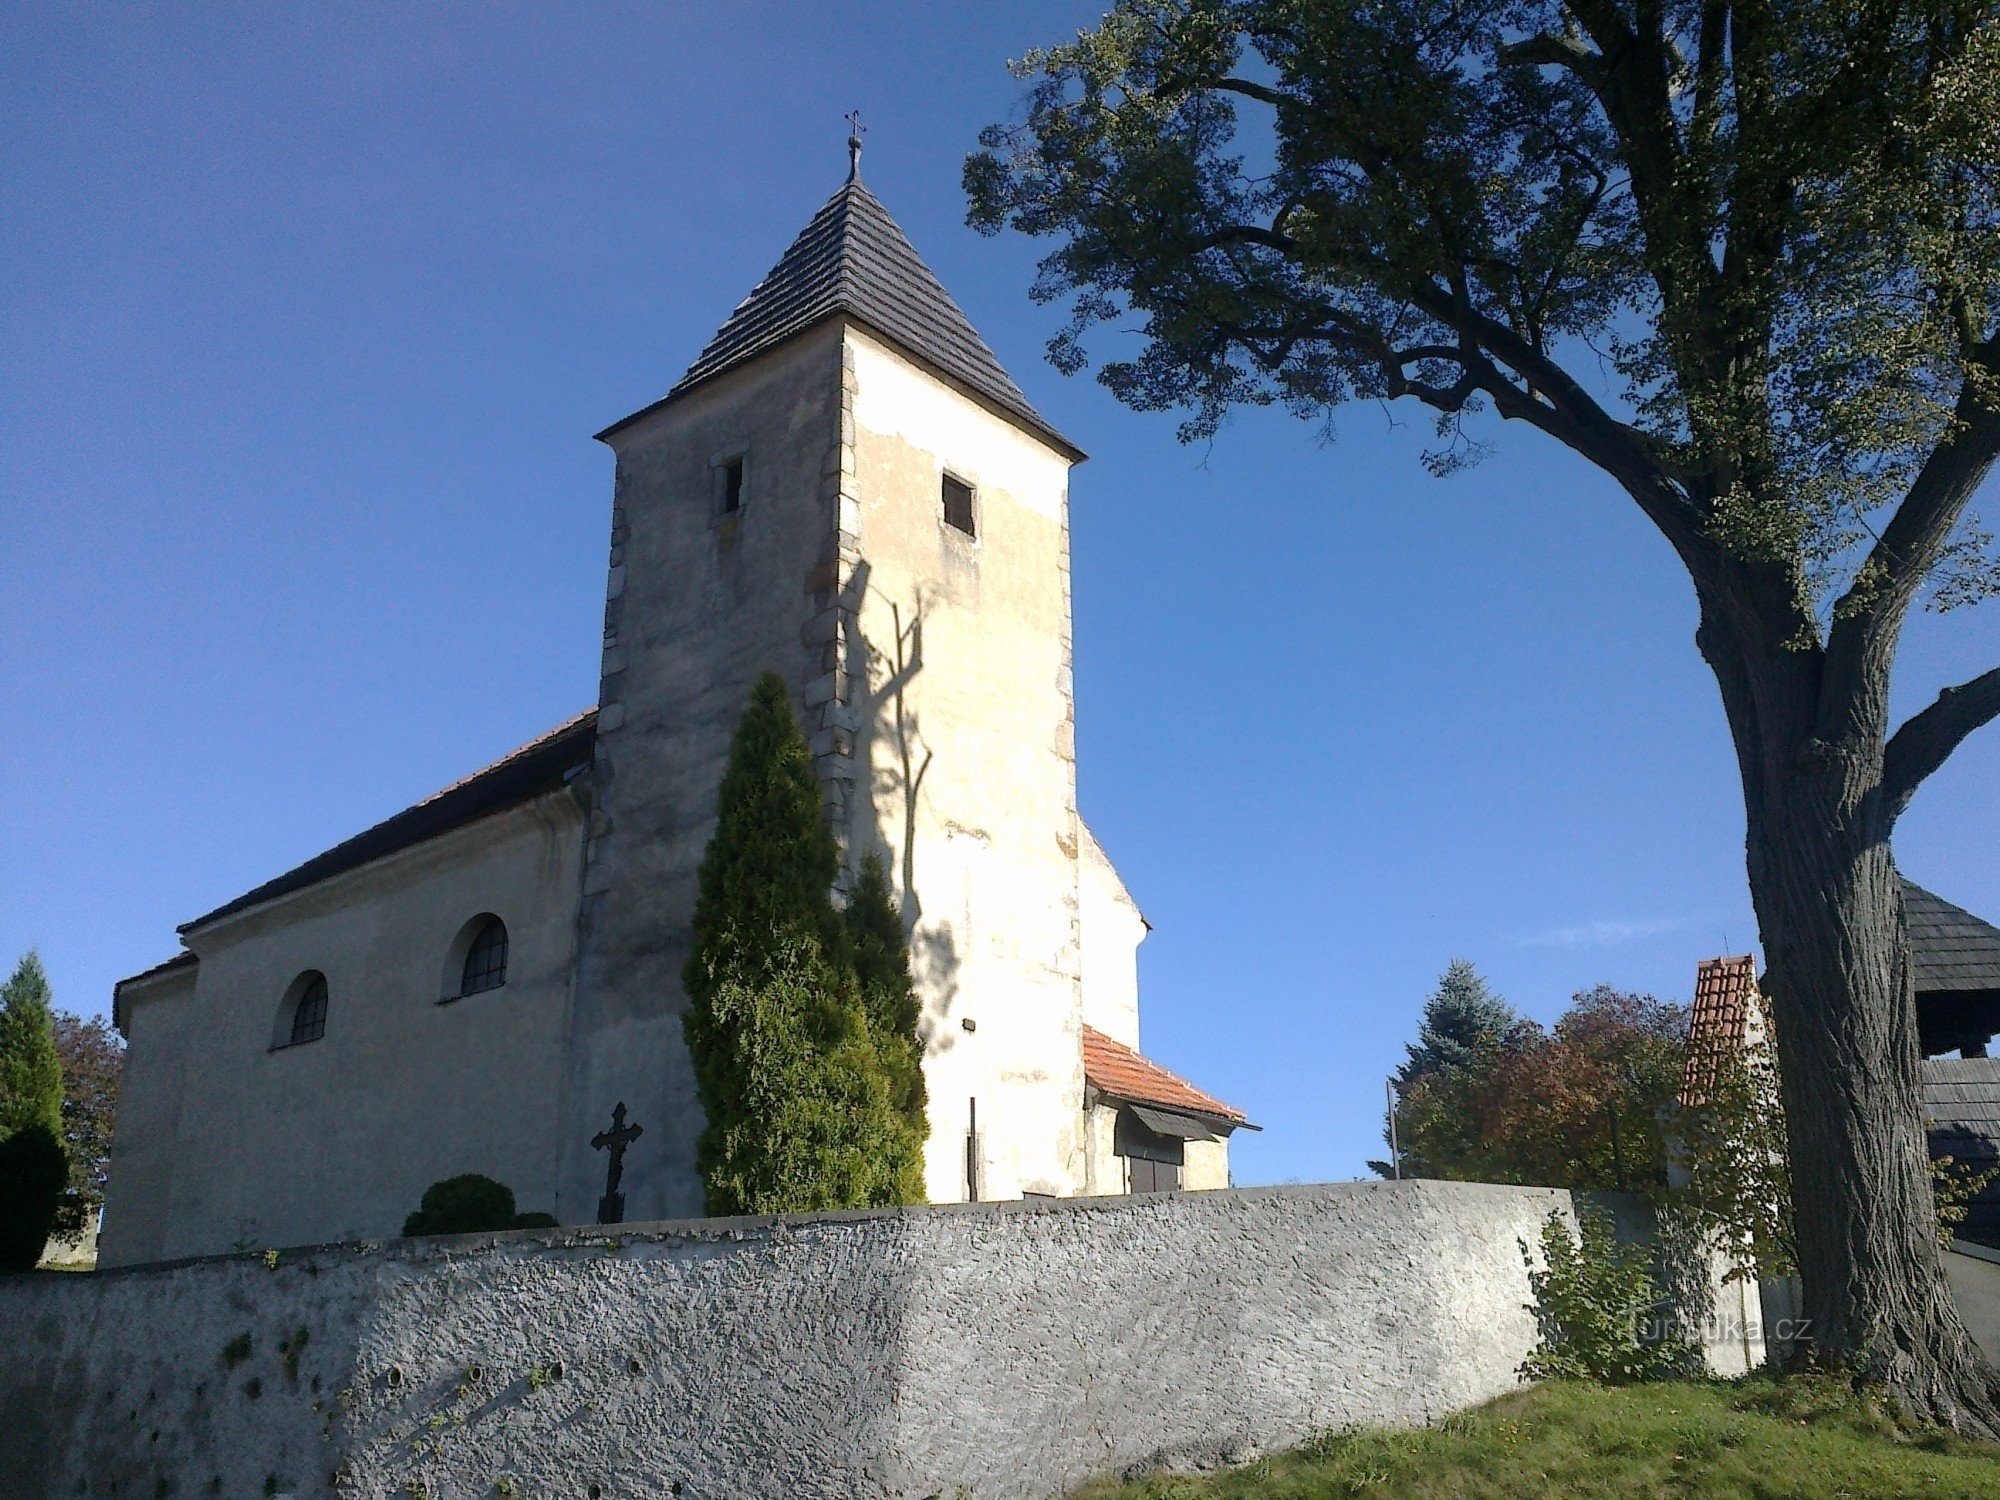 Hölzerner Glockenturm in Ježov.